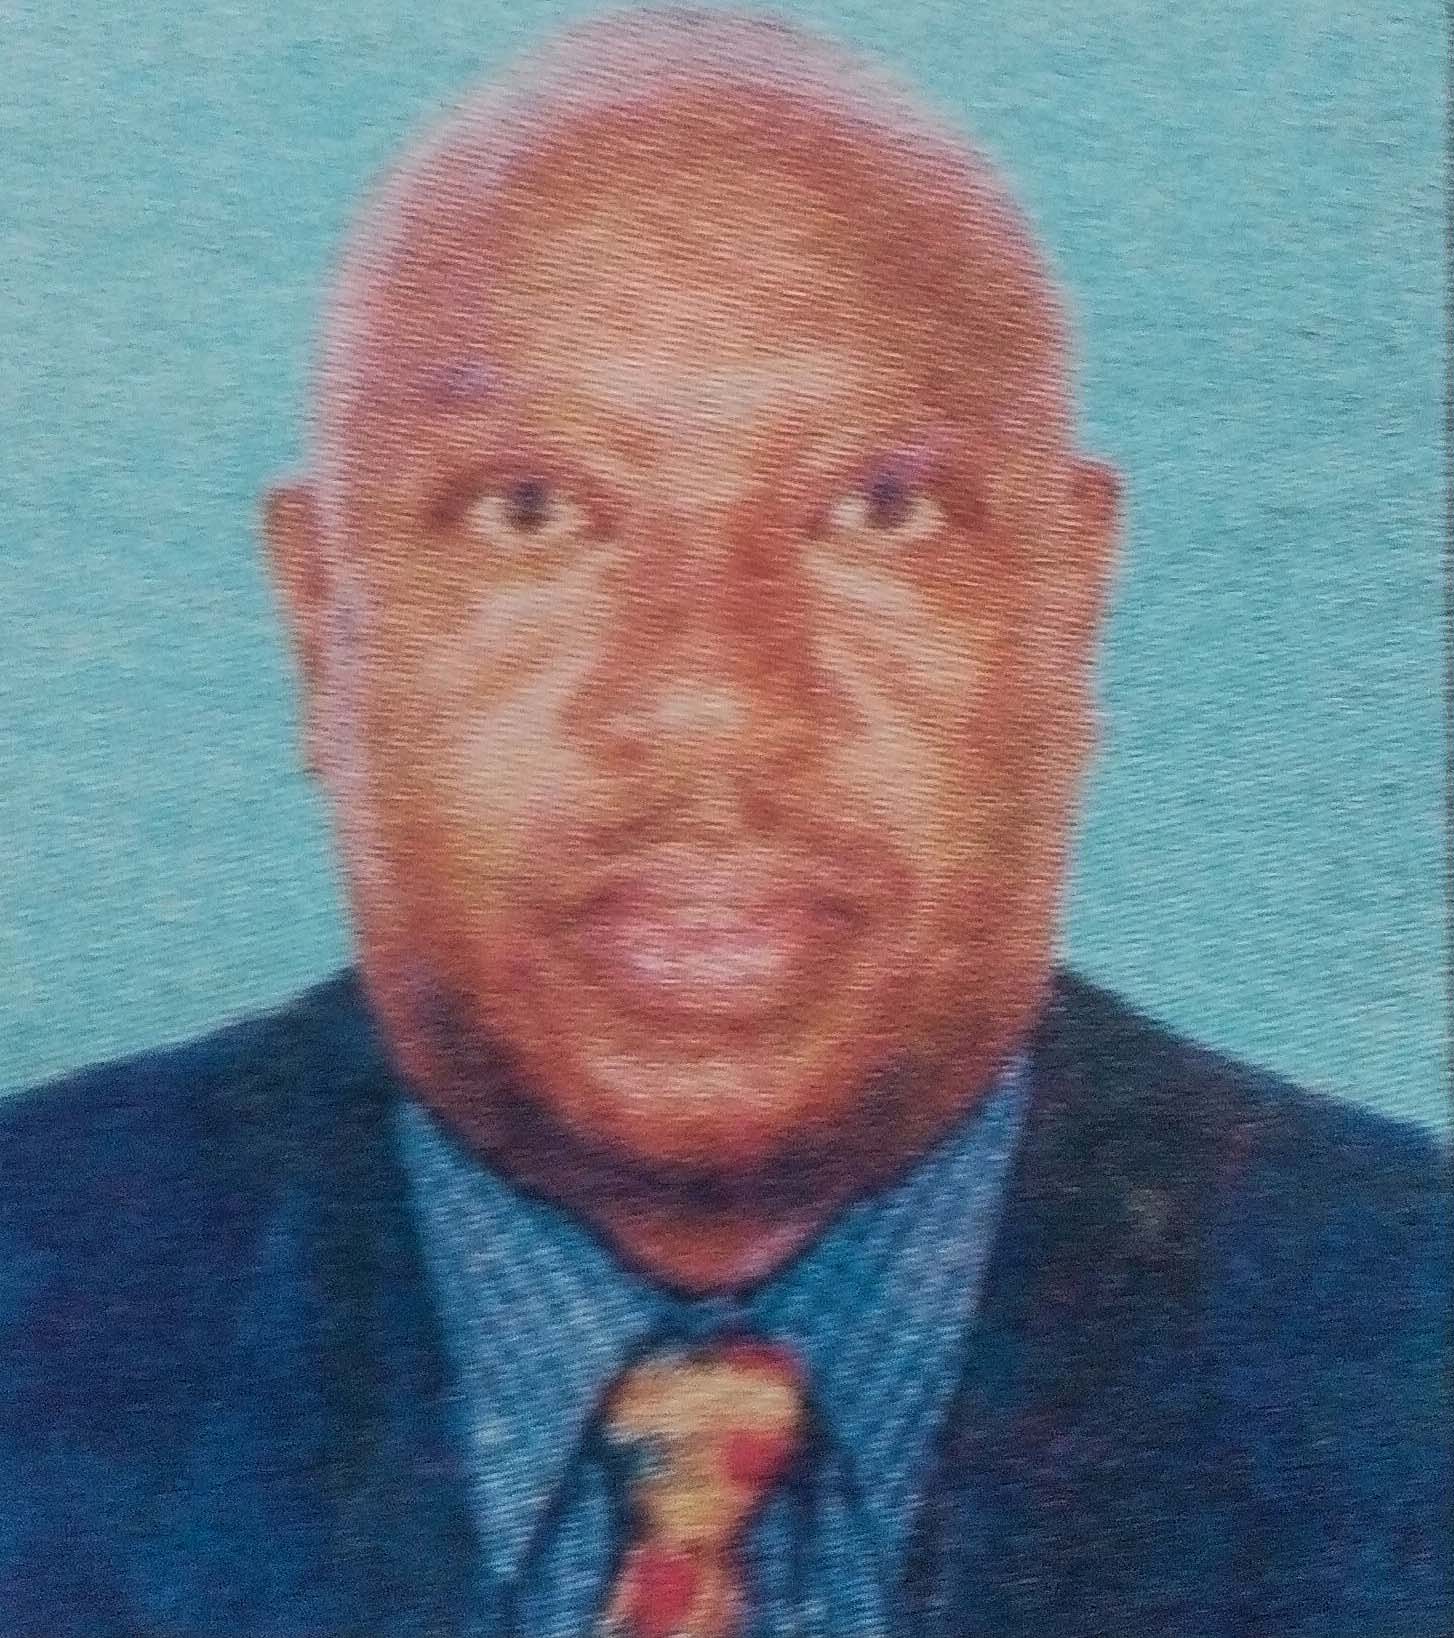 Obituary Image of Rufus Kinyanjui Ng'ethe